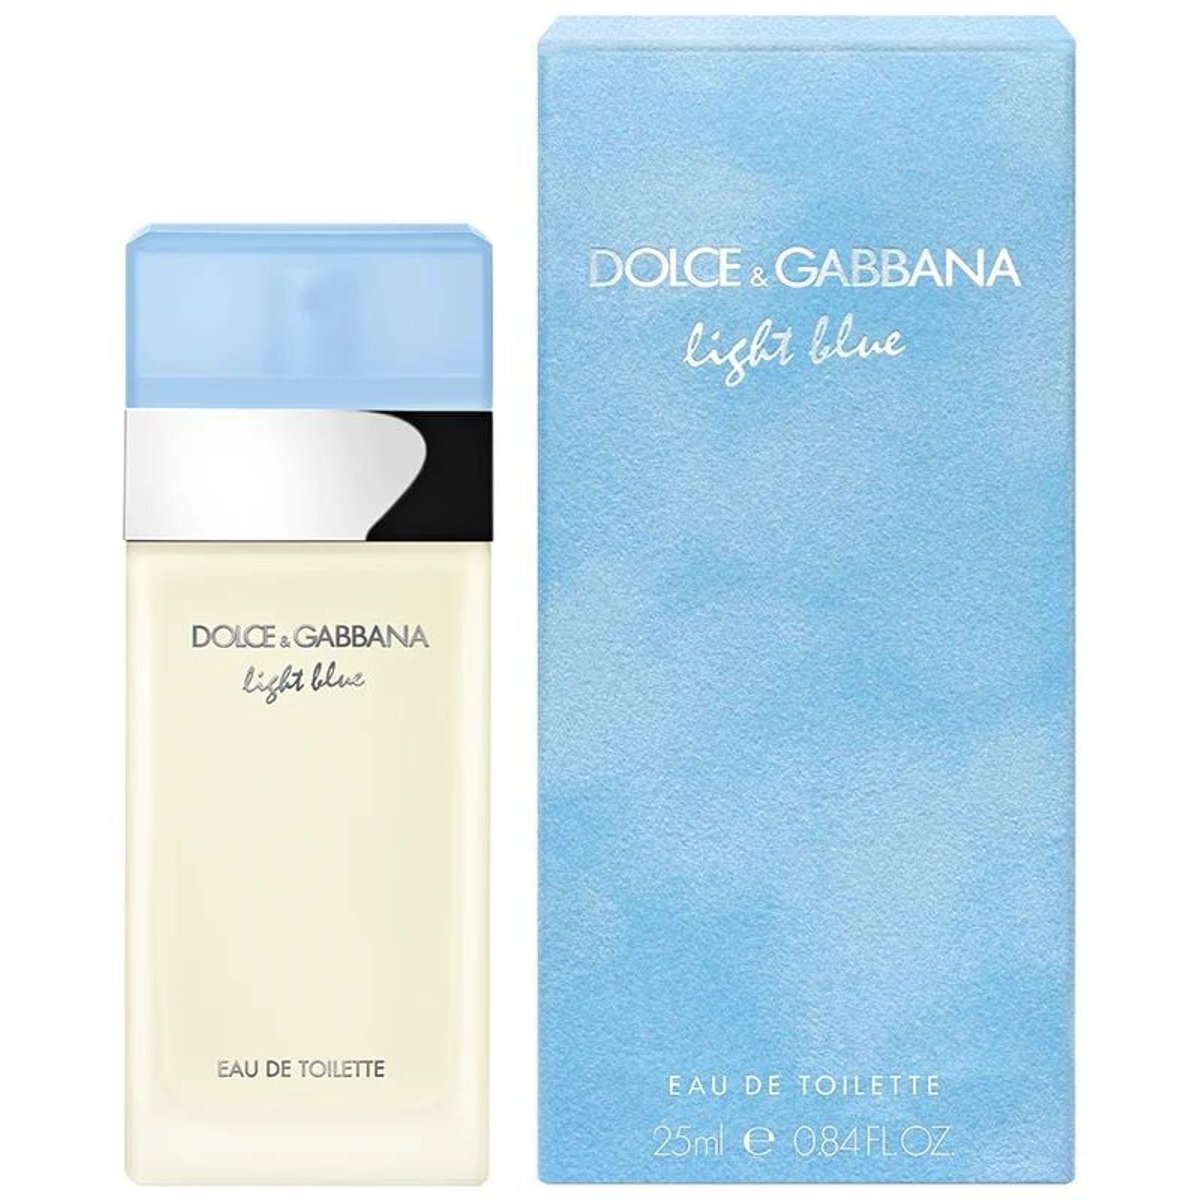 Dolce & Gabbana Light Blue toaletní voda